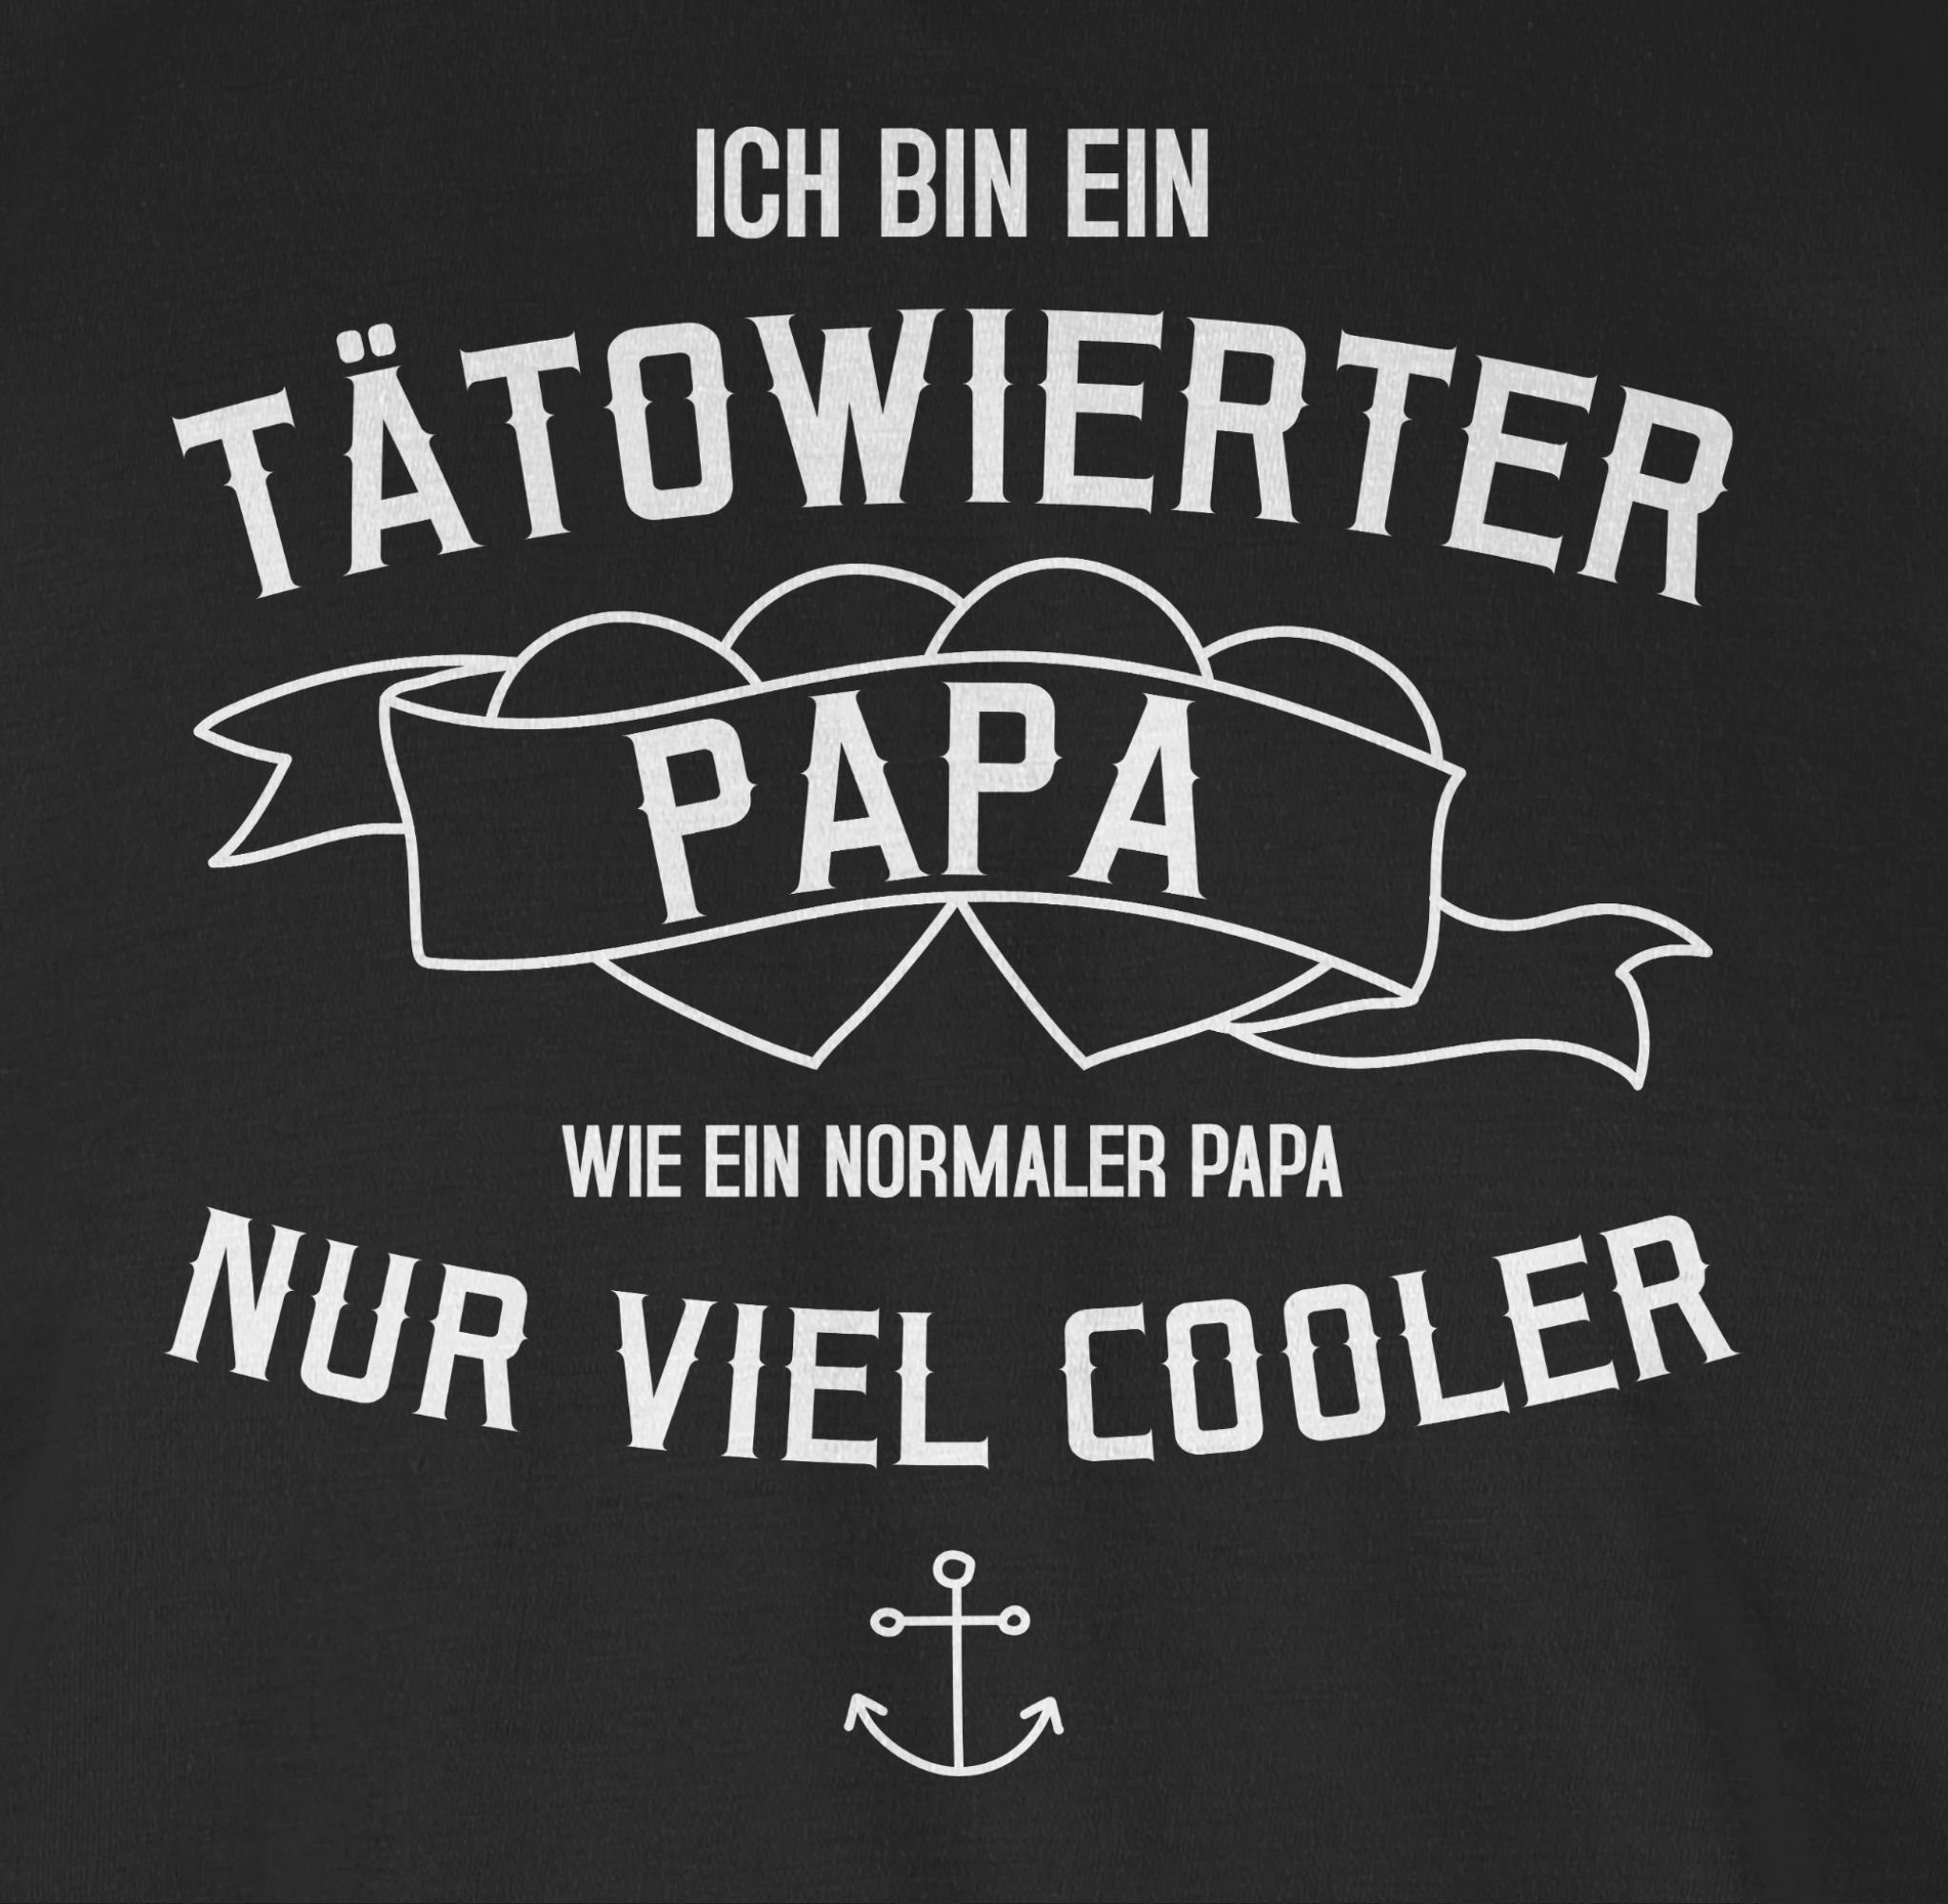 bin für Geschenk Vatertag Shirtracer tätowierter Schwarz 1 ein Papa Papa T-Shirt Ich